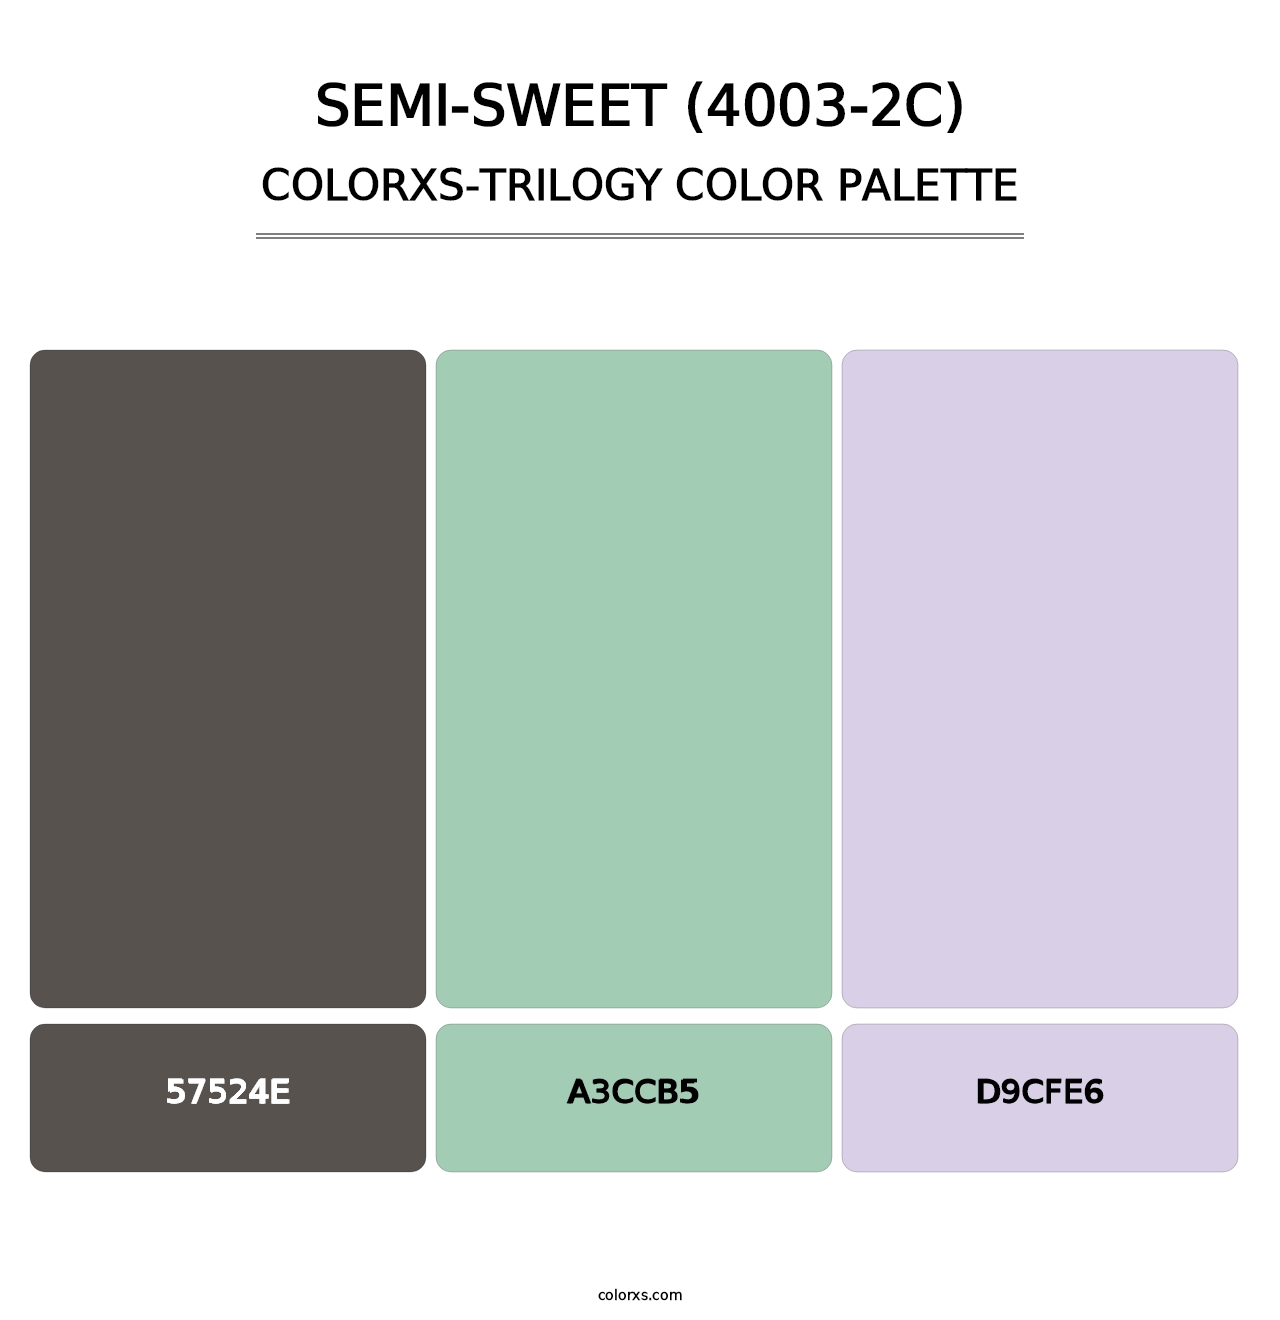 Semi-Sweet (4003-2C) - Colorxs Trilogy Palette